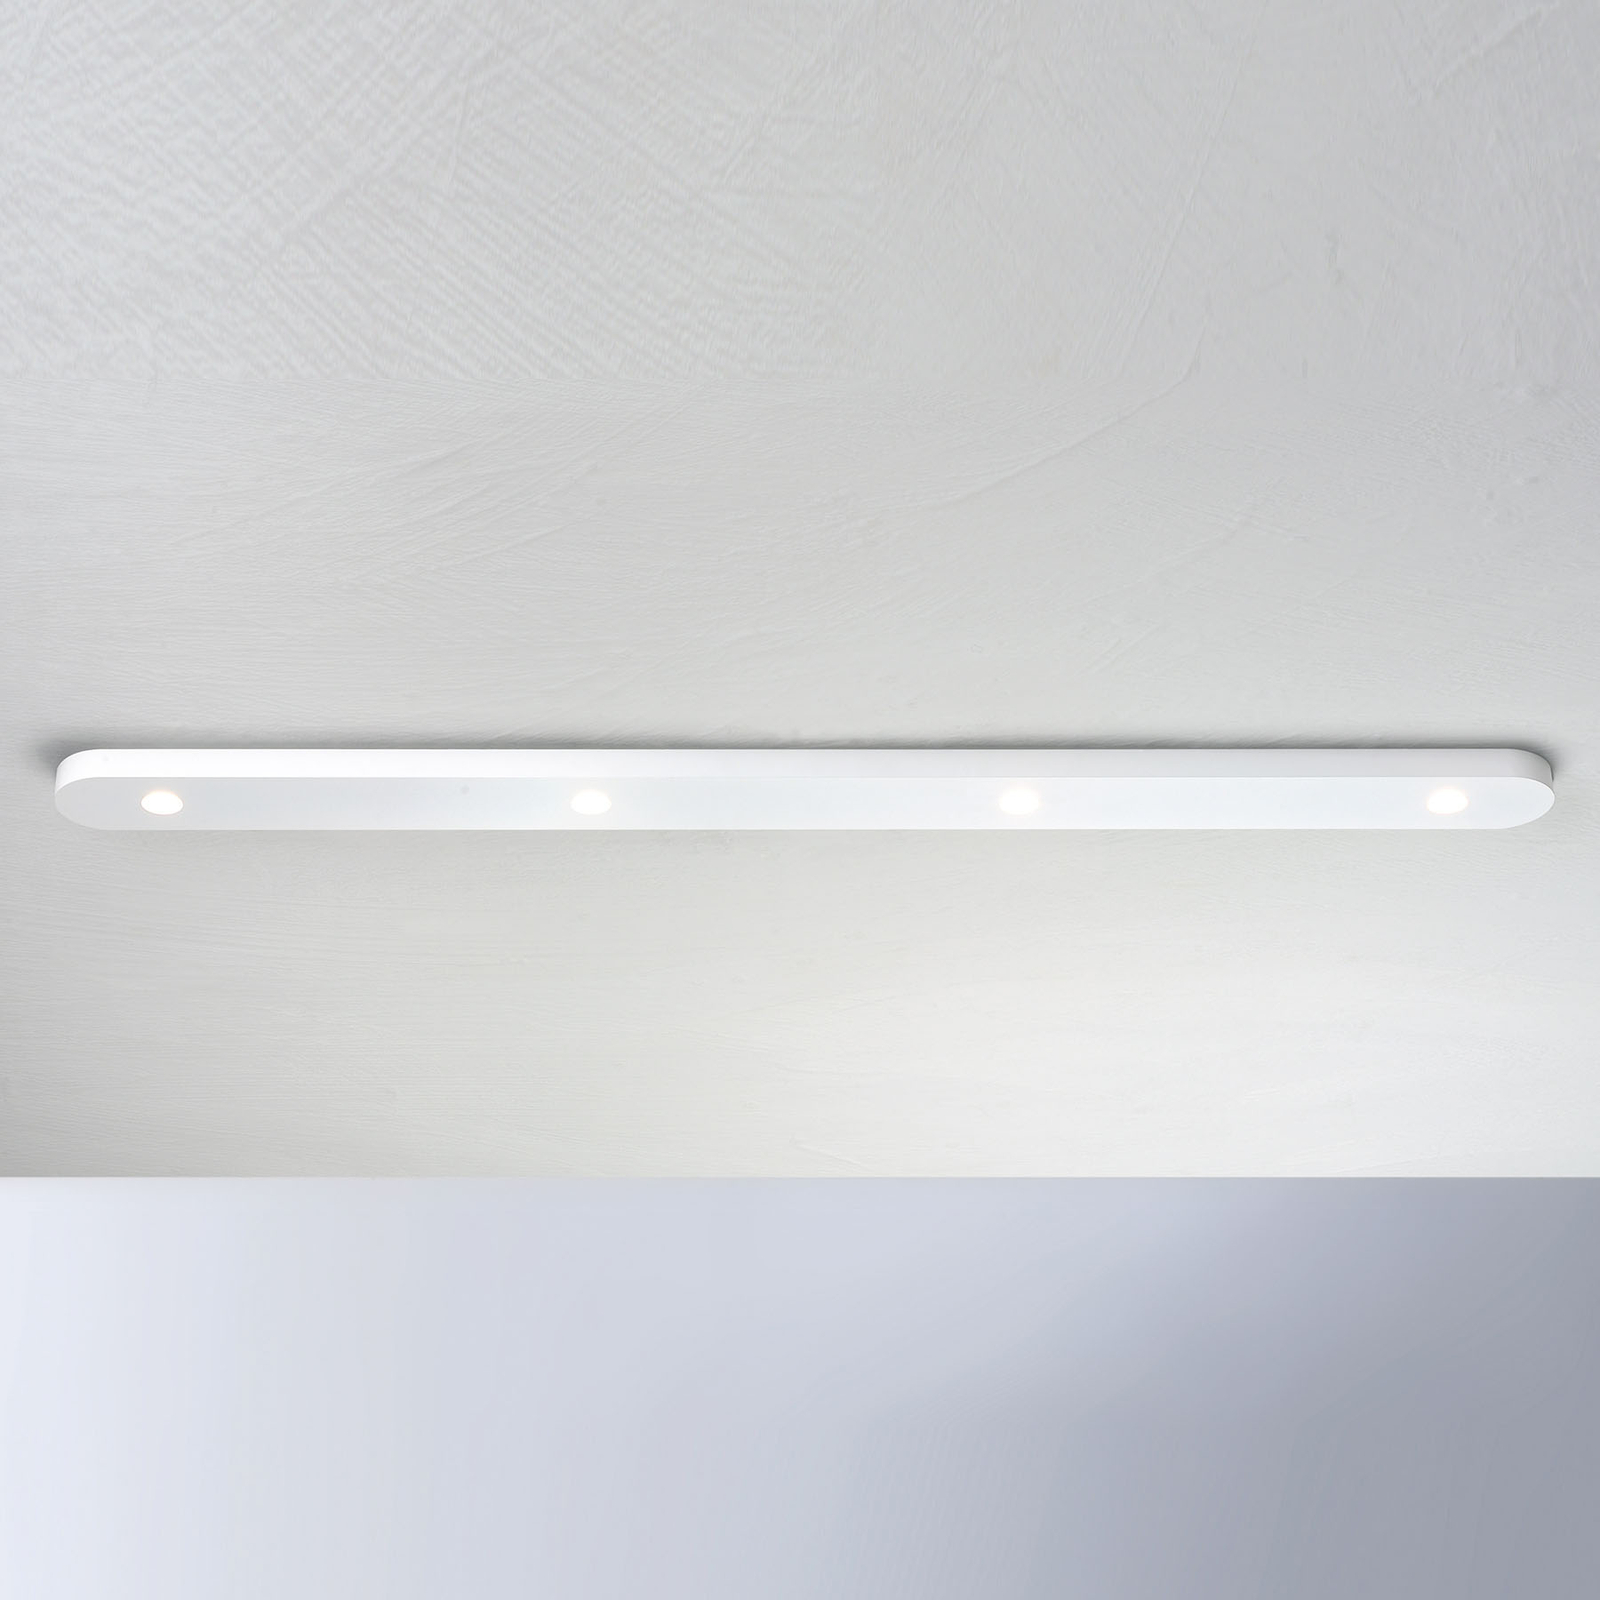 Bopp Close plafonnier LED à 4 lampes, blanc